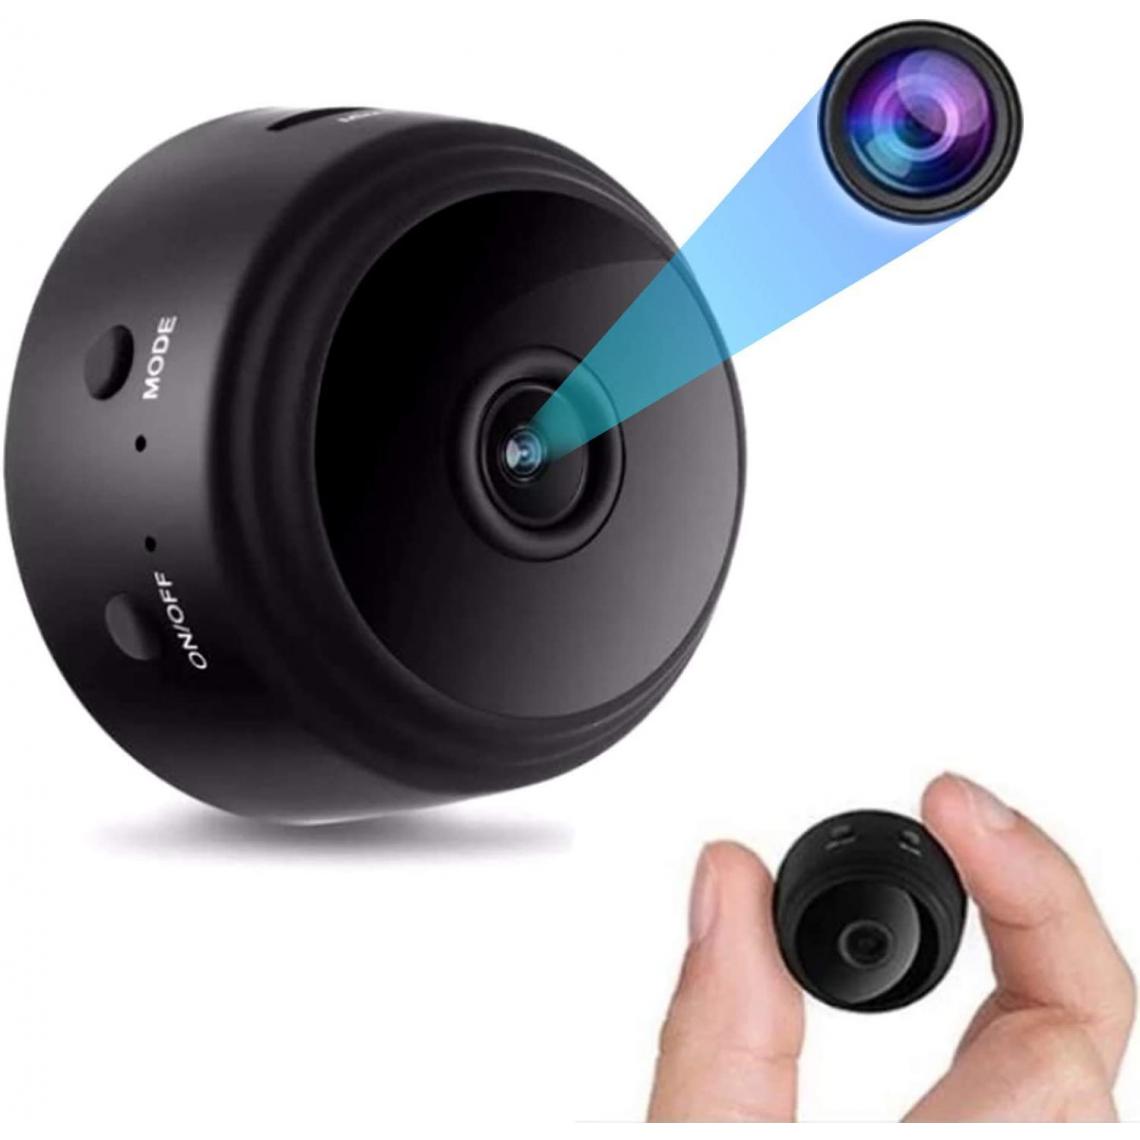 Chrono - Mini caméra espion 1080p Full HD WiFi sans fil, caméra cachée, mini caméra espion magnétique avec DVR vision nocturne, vue en temps réel, angle de vision de 150° pour la sécurité de la maison(noir) - Autres accessoires smartphone